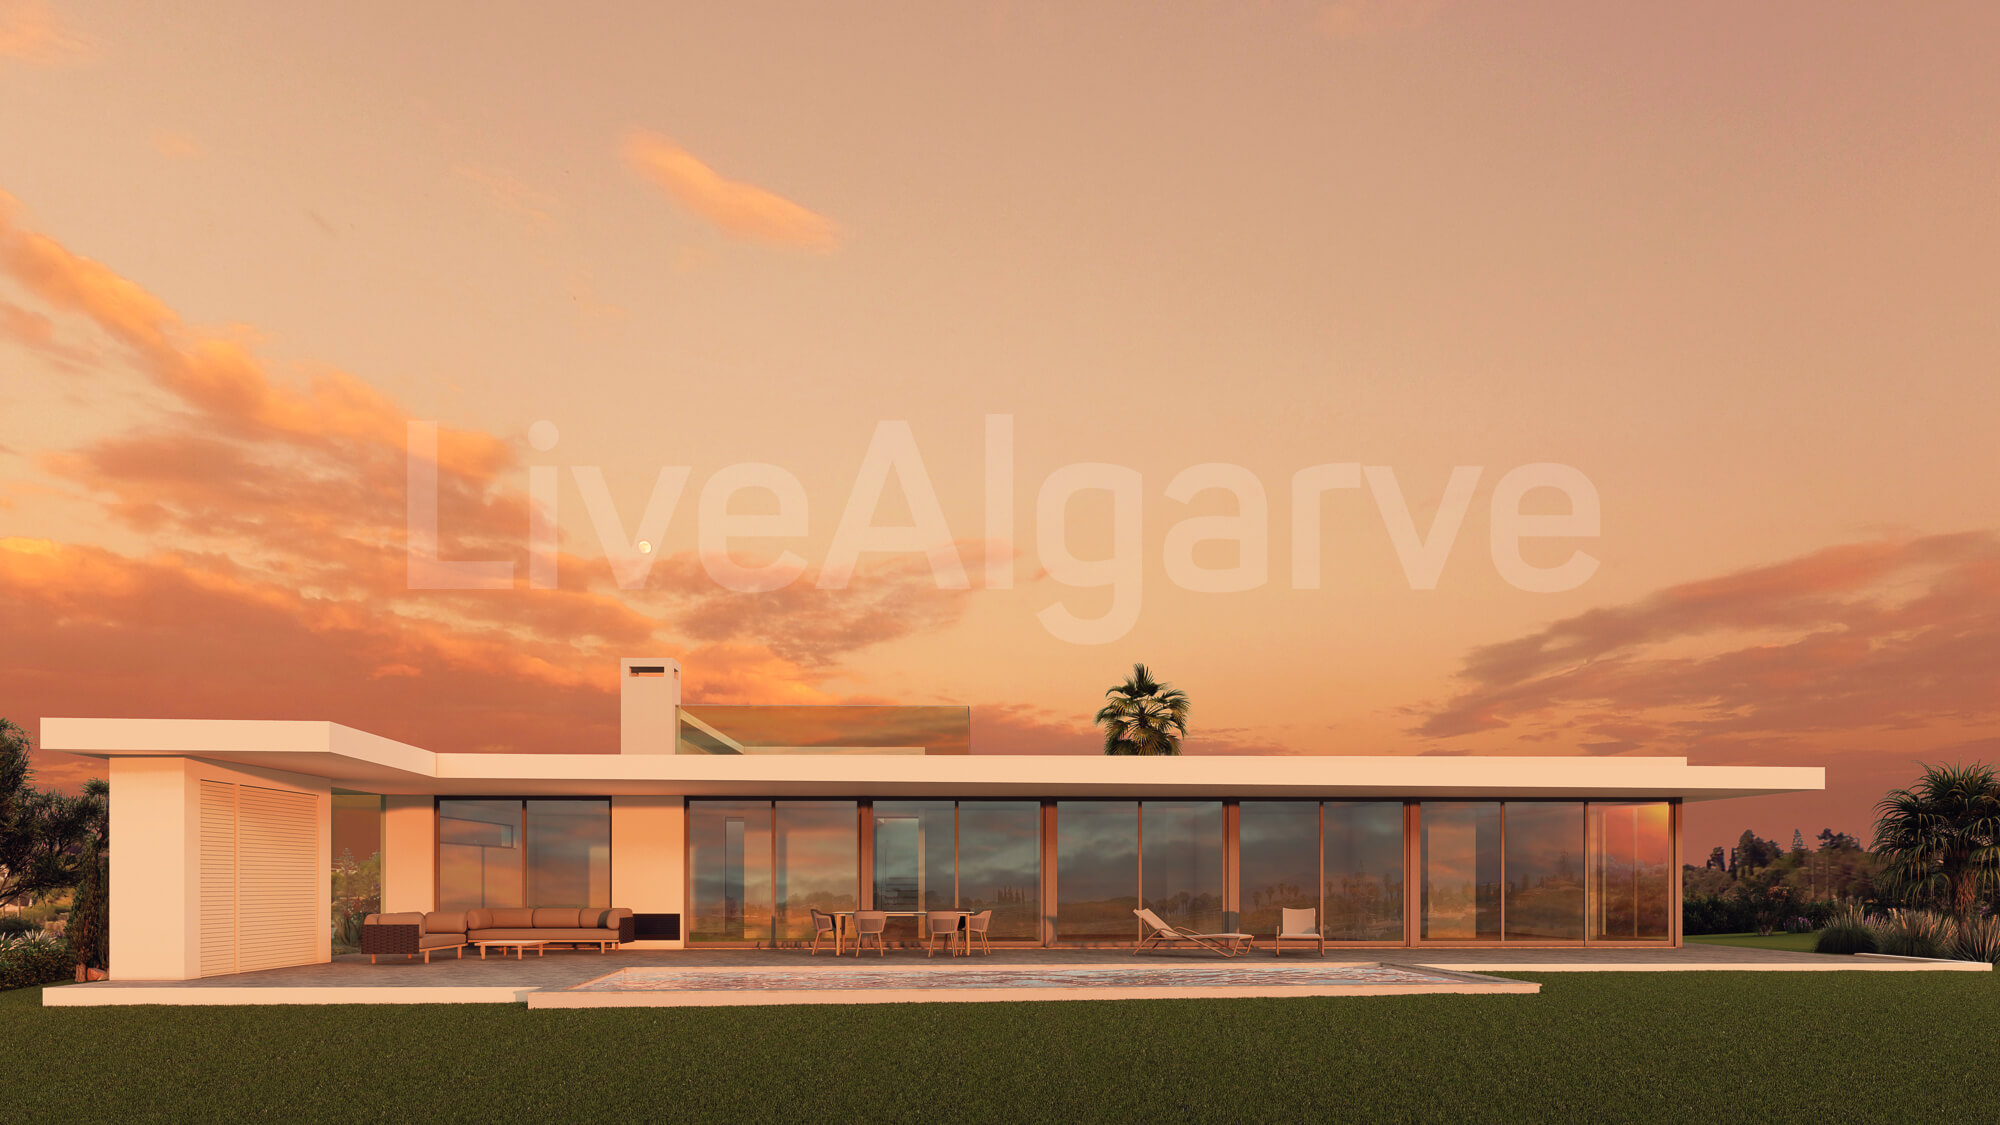 NEW DEVELOPMENT | Luxury Off-Plan T3 Villa in Vale da Lama for Sale – Lagos